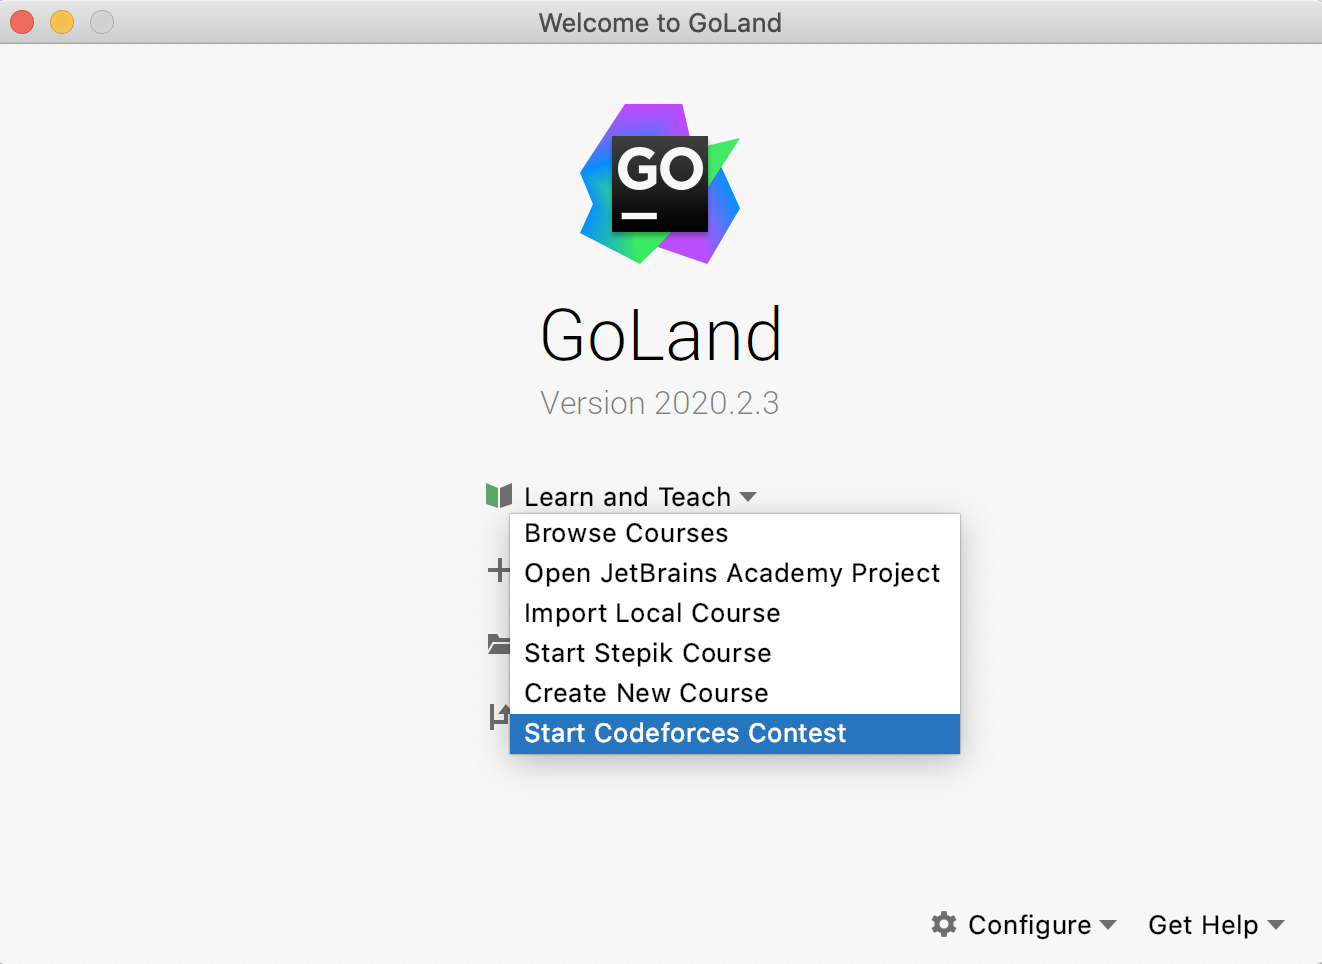 edu start codeforces contest goland png